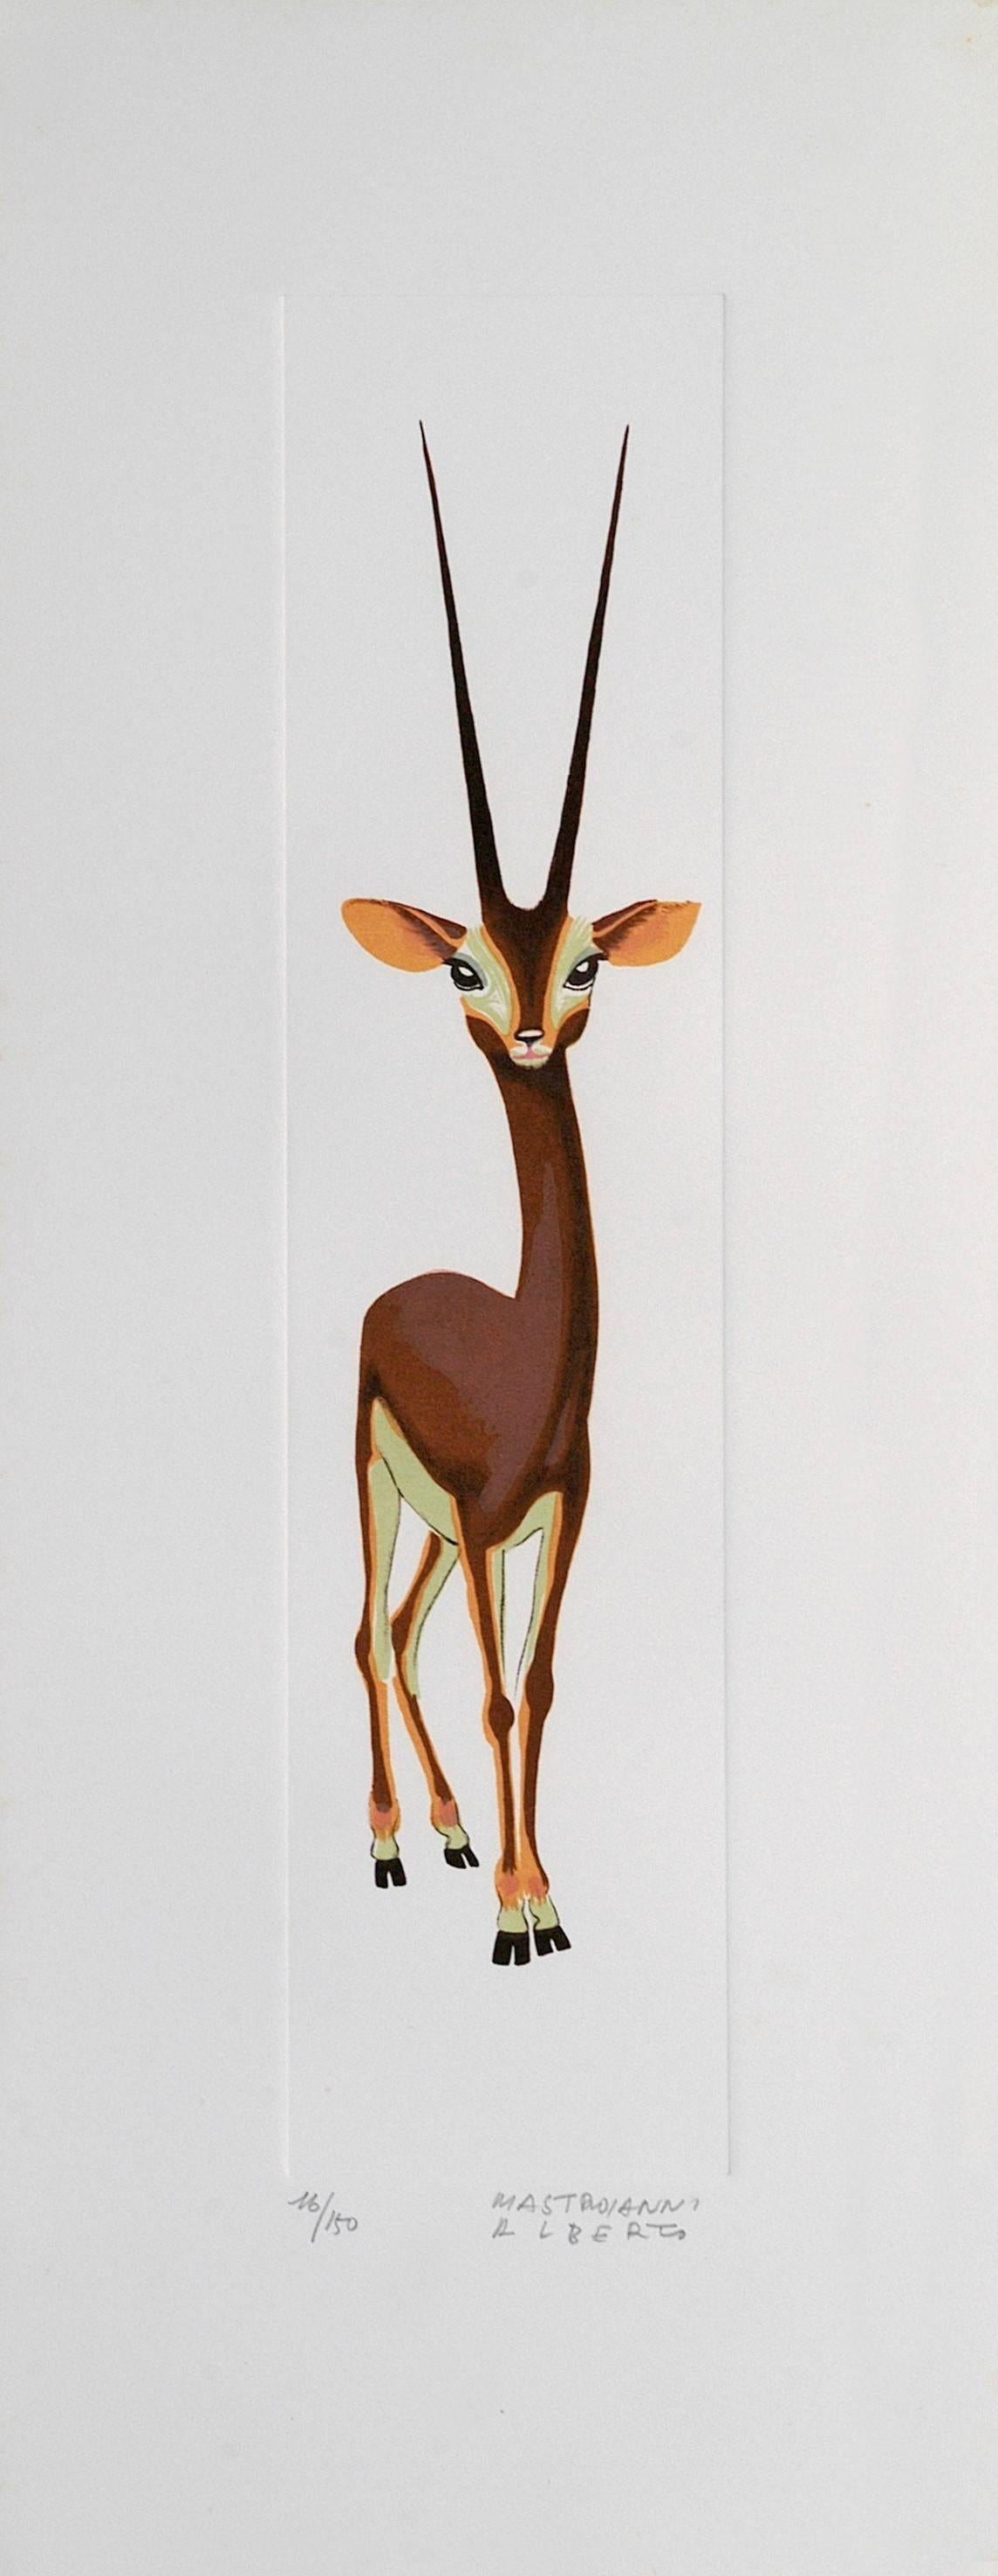 Alberto Mastroianni Animal Print - Gazelle